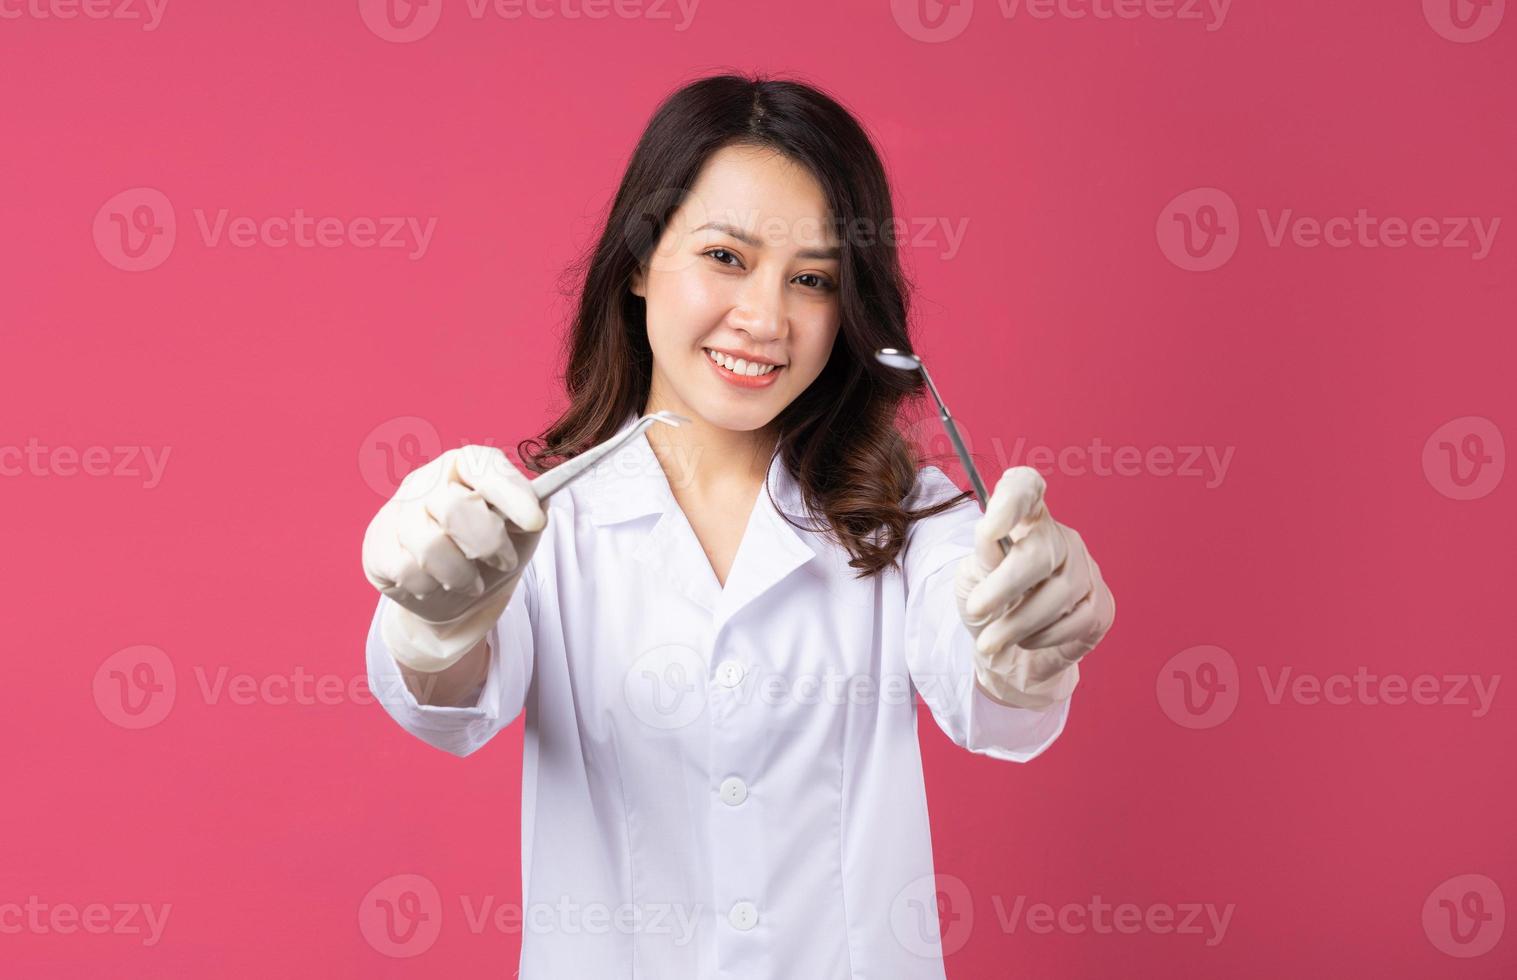 jeune femme médecin asiatique avec une expression joyeuse sur fond photo